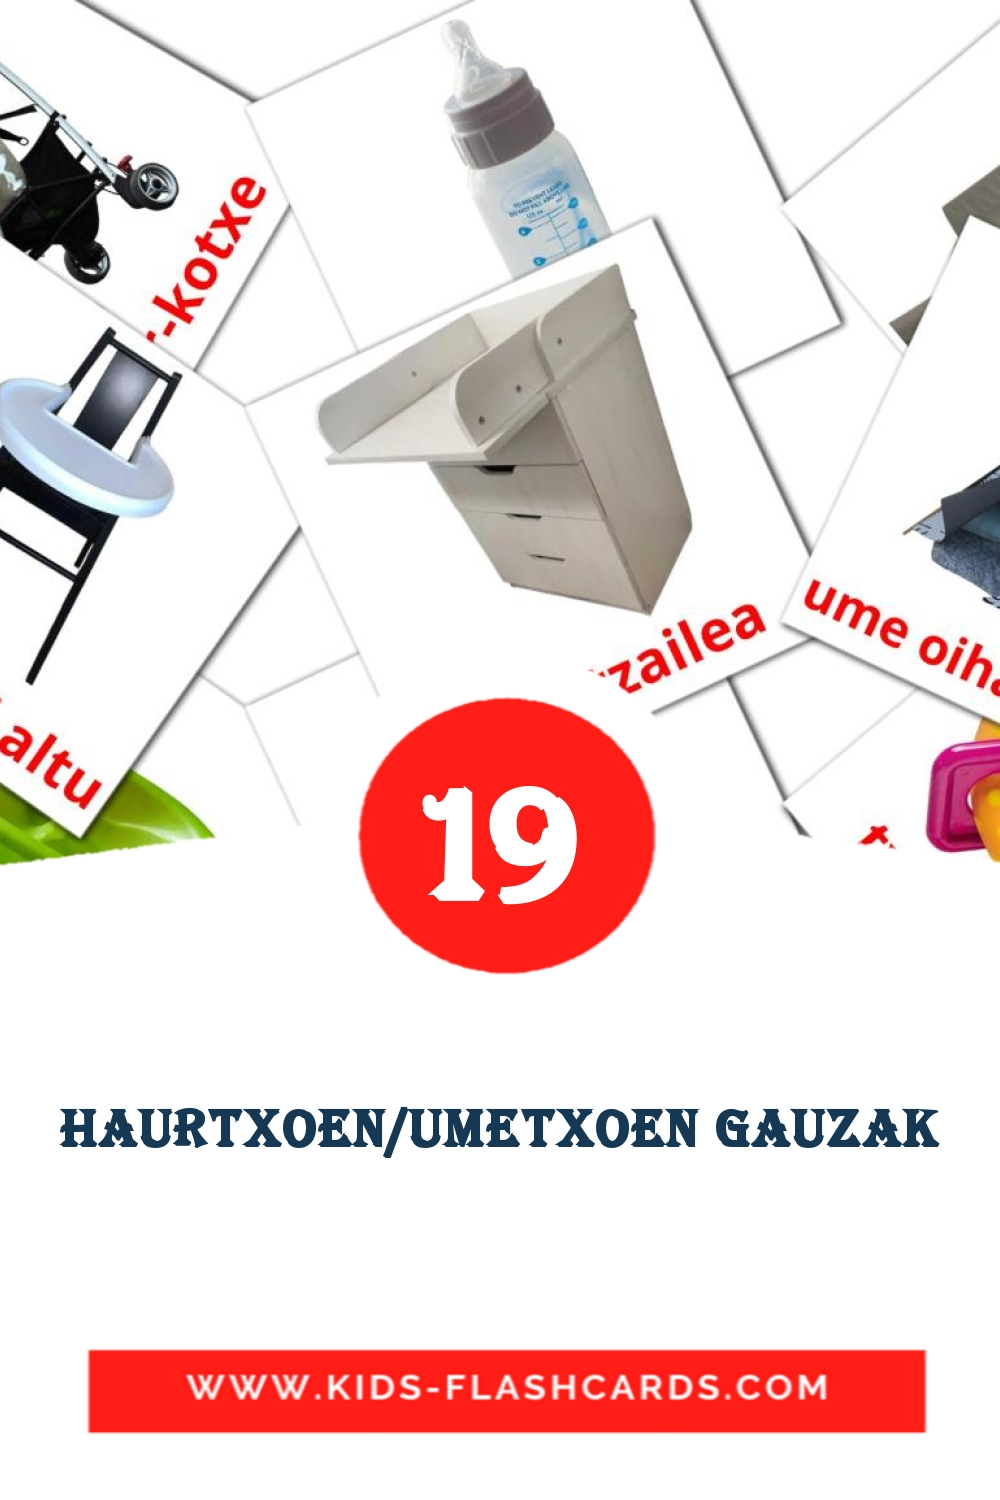 19 Haurtxoen/Umetxoen gauzak fotokaarten voor kleuters in het baskisch